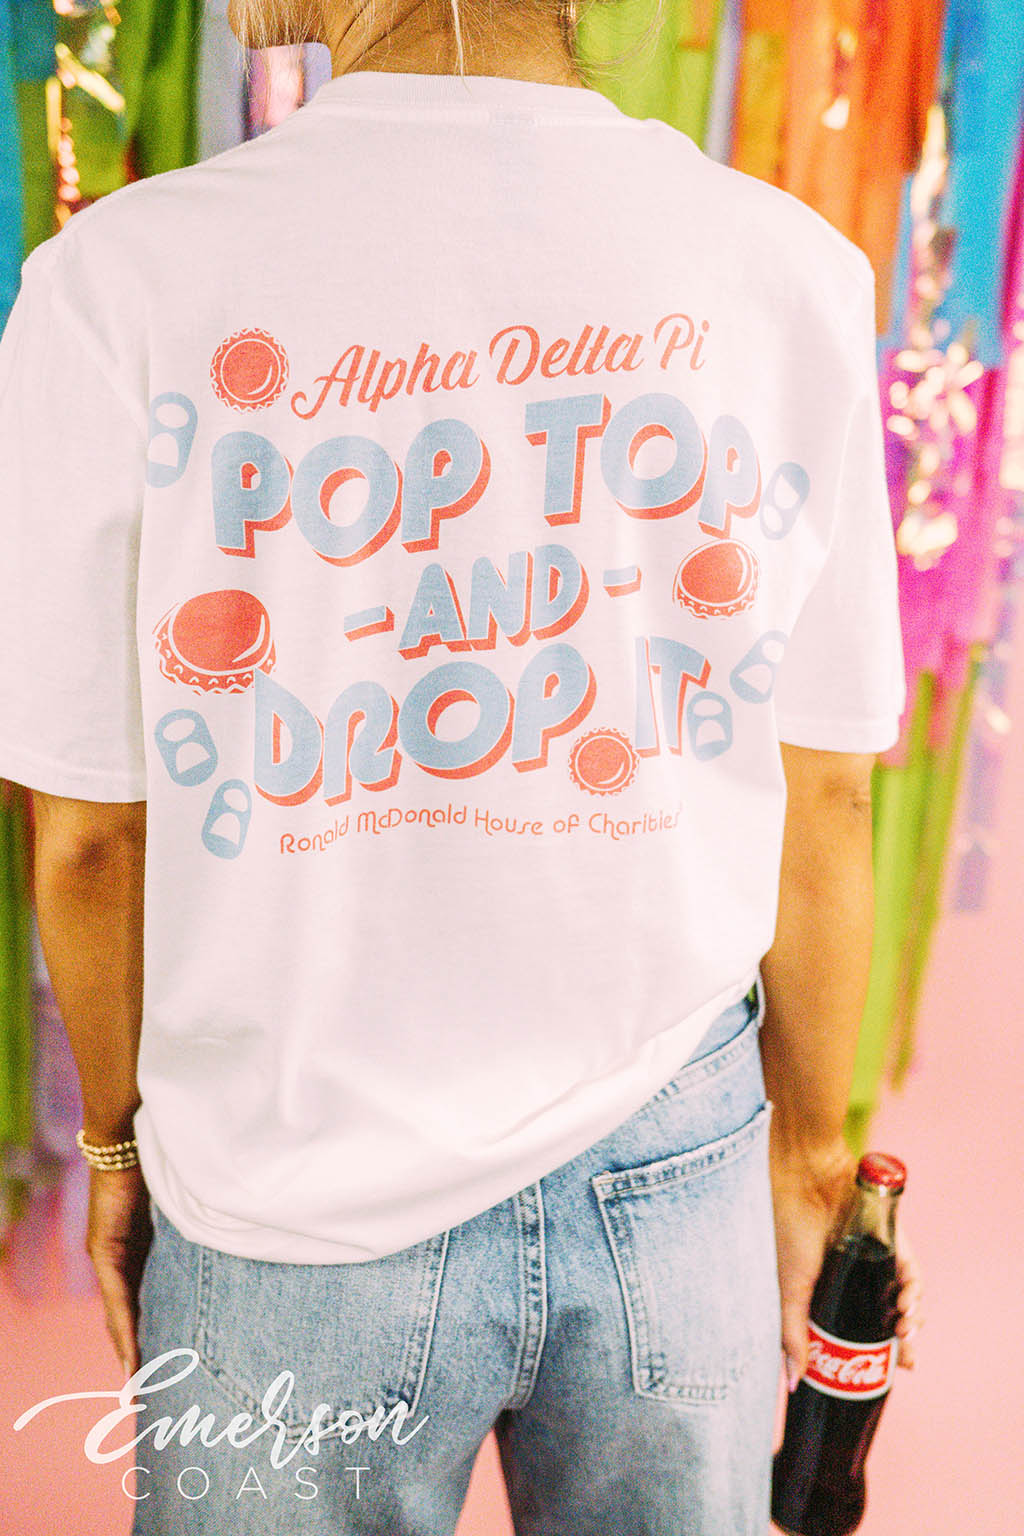 Alpha Delta Pi Philanthropy Pop Top and Drop It Bottle Cap Tee